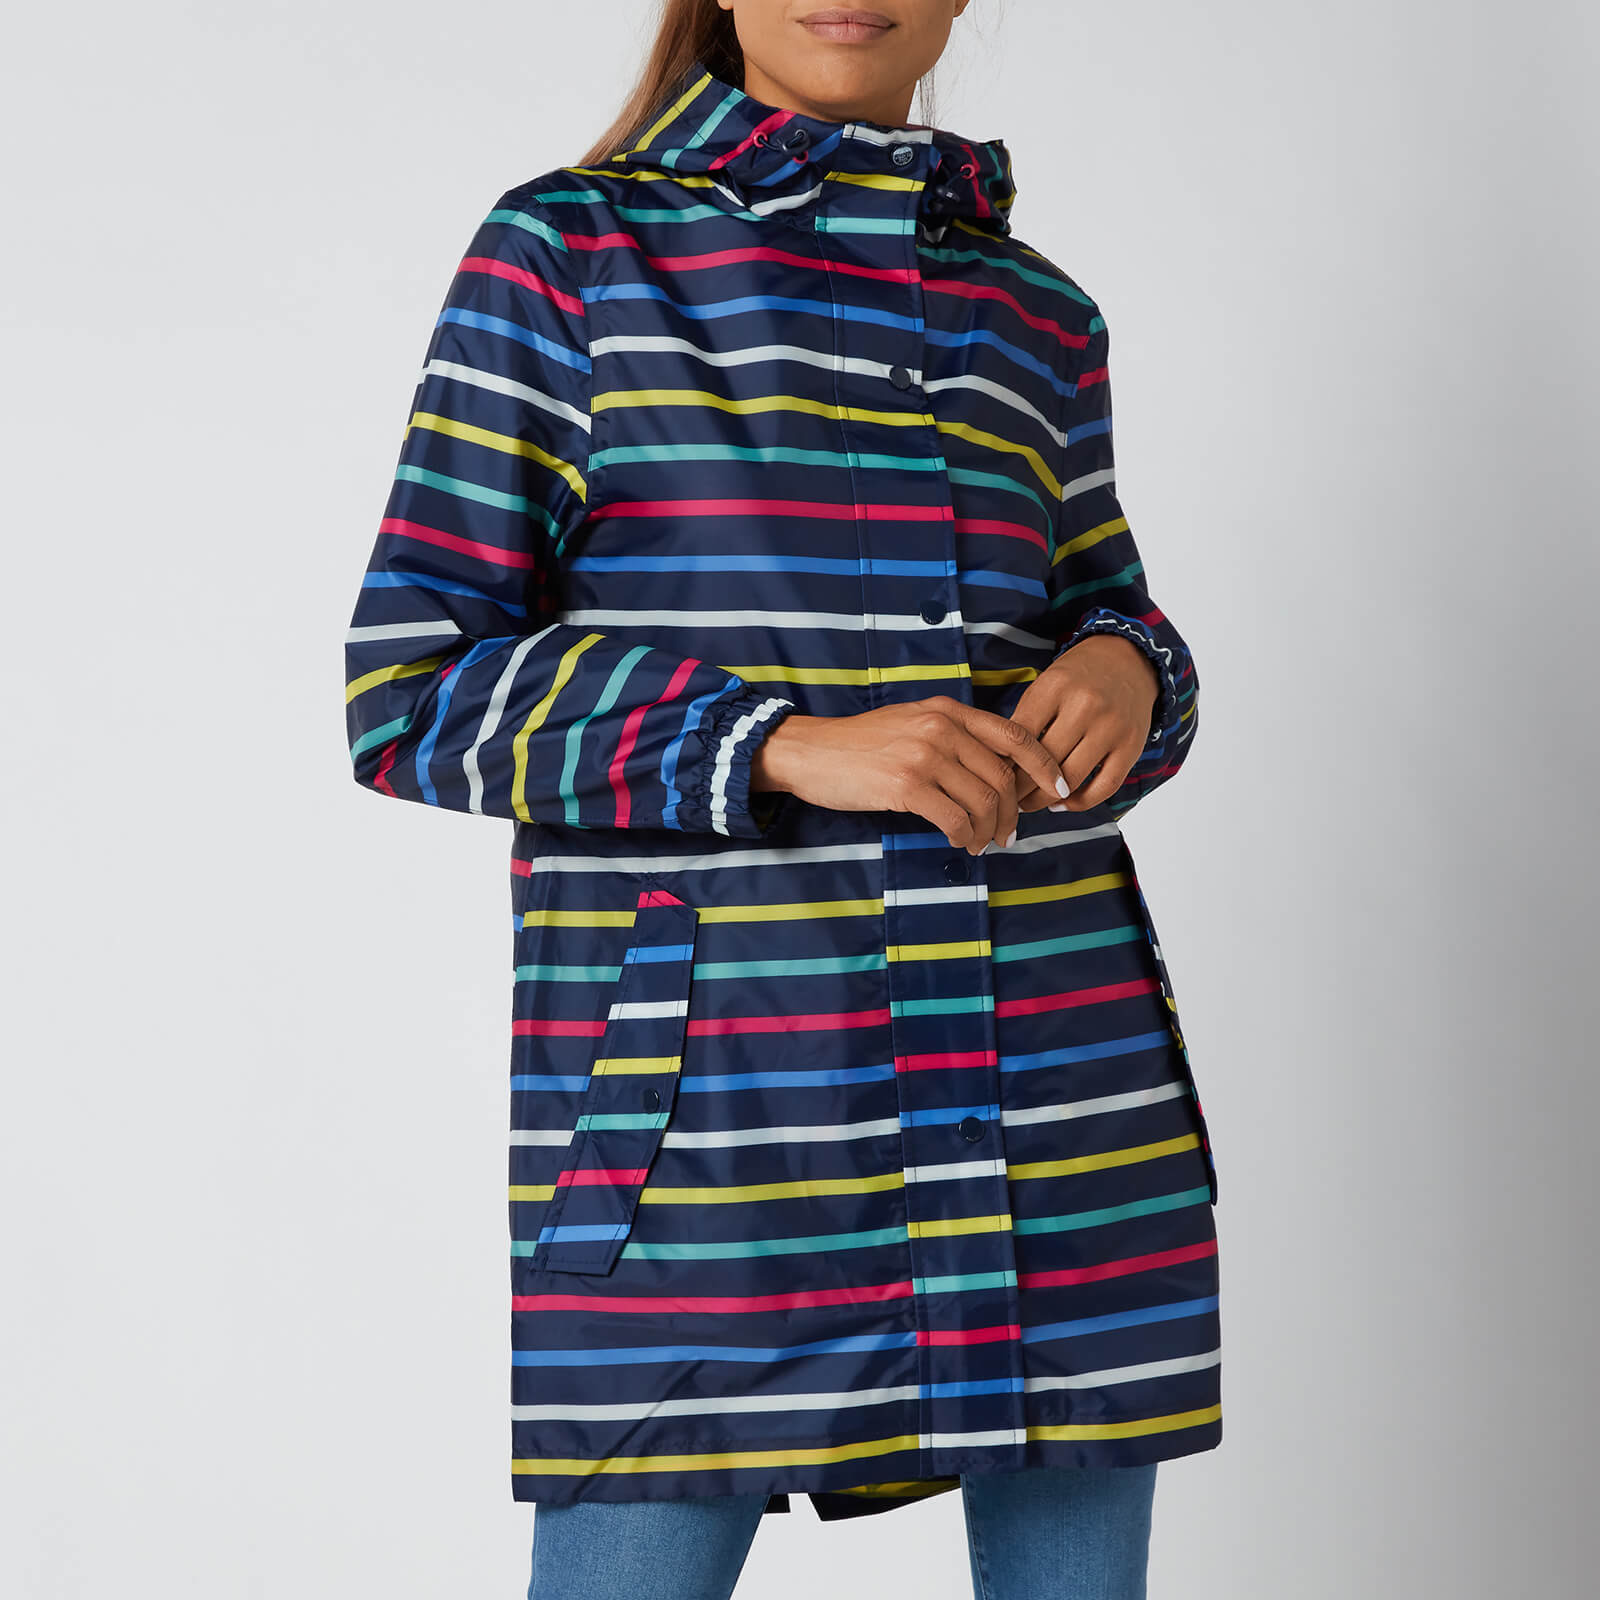 Joules Women's Golightly Packable Jacket - Multi Stripe - UK 6